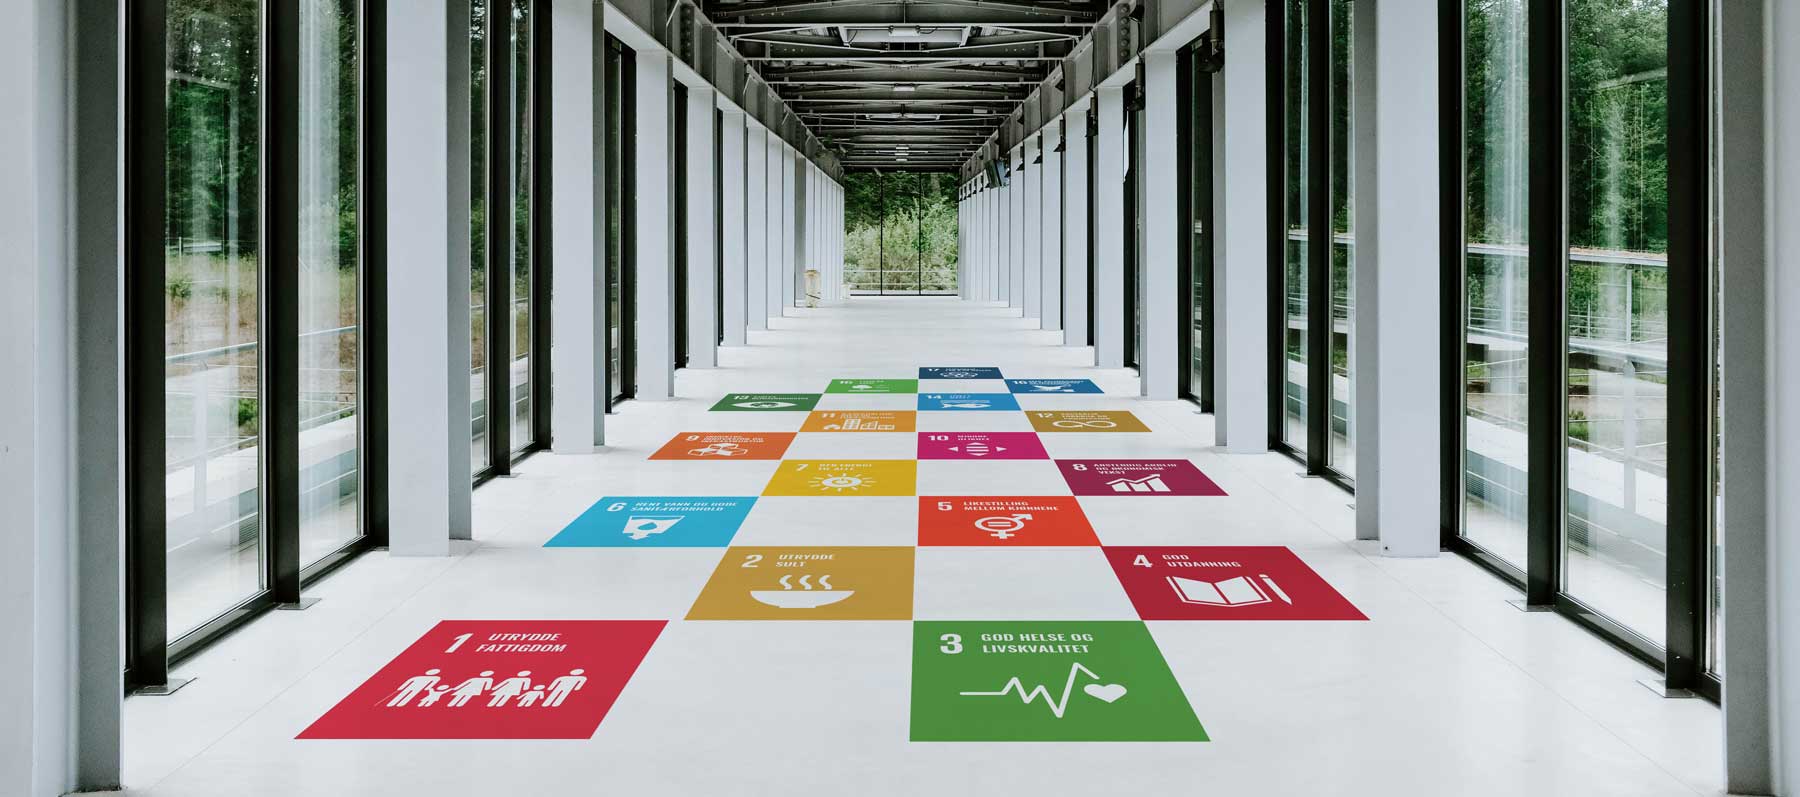 FNs bærekraftsmål består av 17 mål , skoledekor,Målene skal fungere som en felles global retning for land, næringsliv og sivilsamfunn.